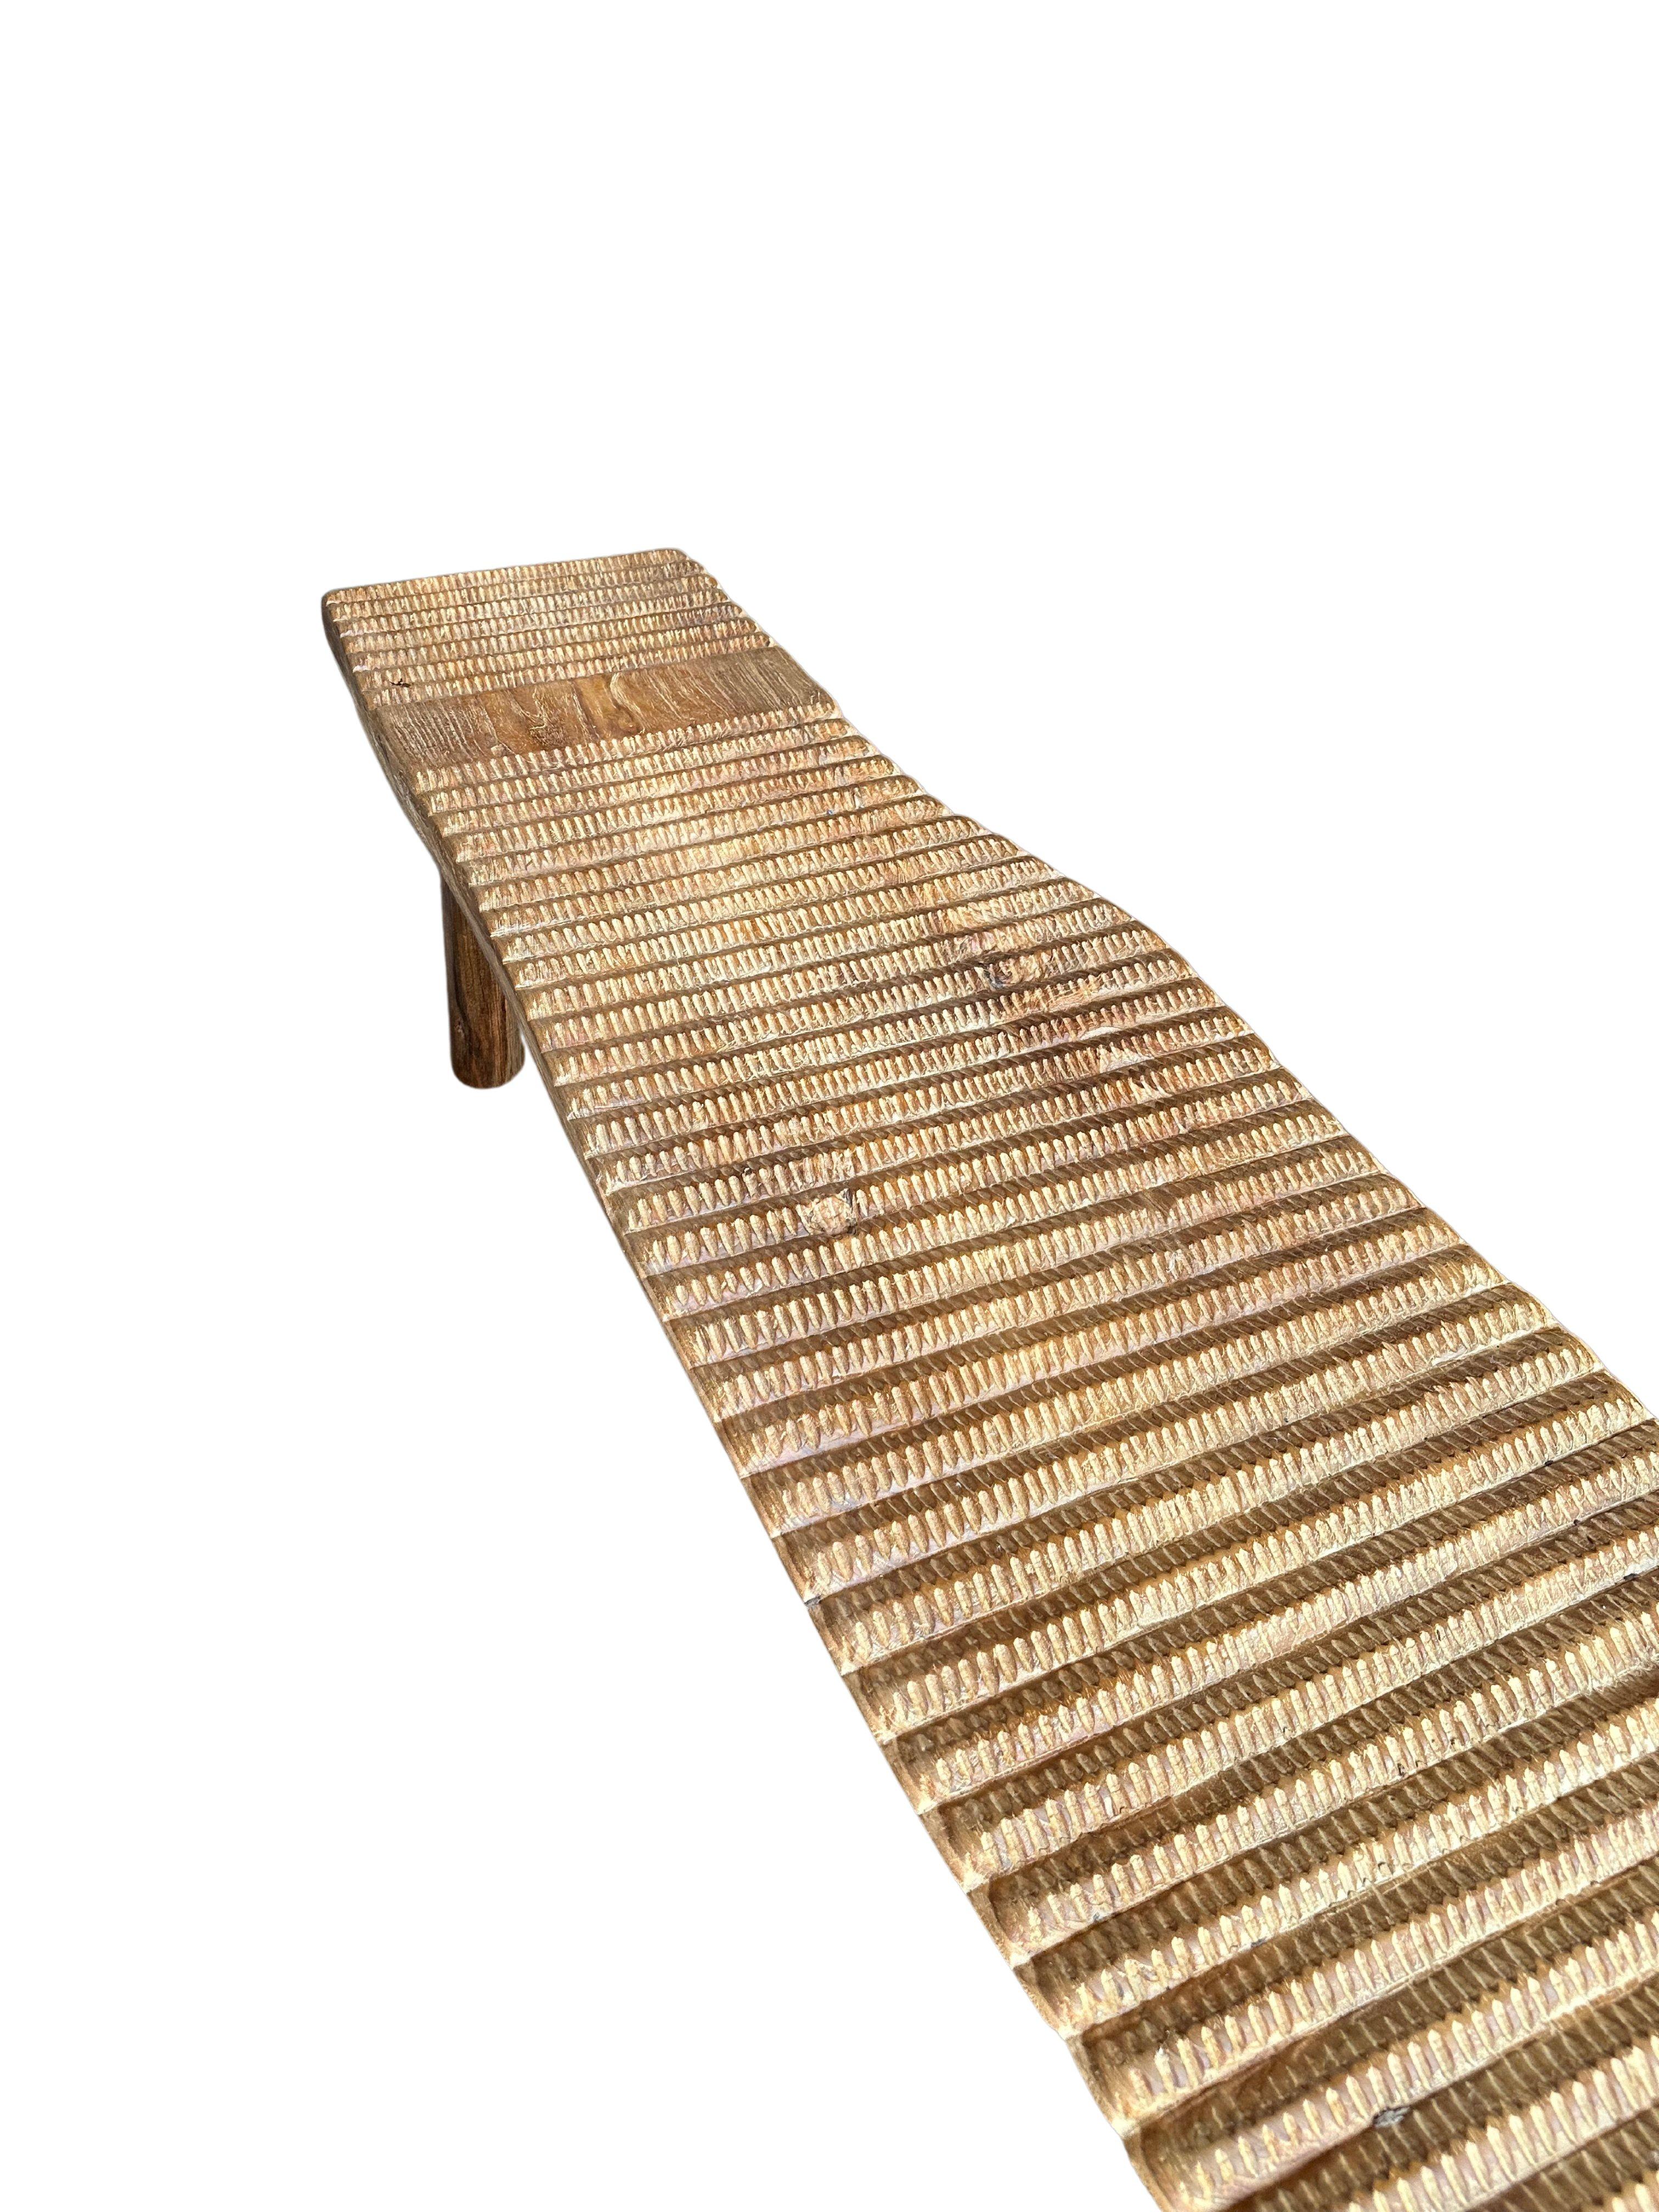 Teak Wood Sculptural Long Bench, Carved Detailing, Modern Organic For Sale 2